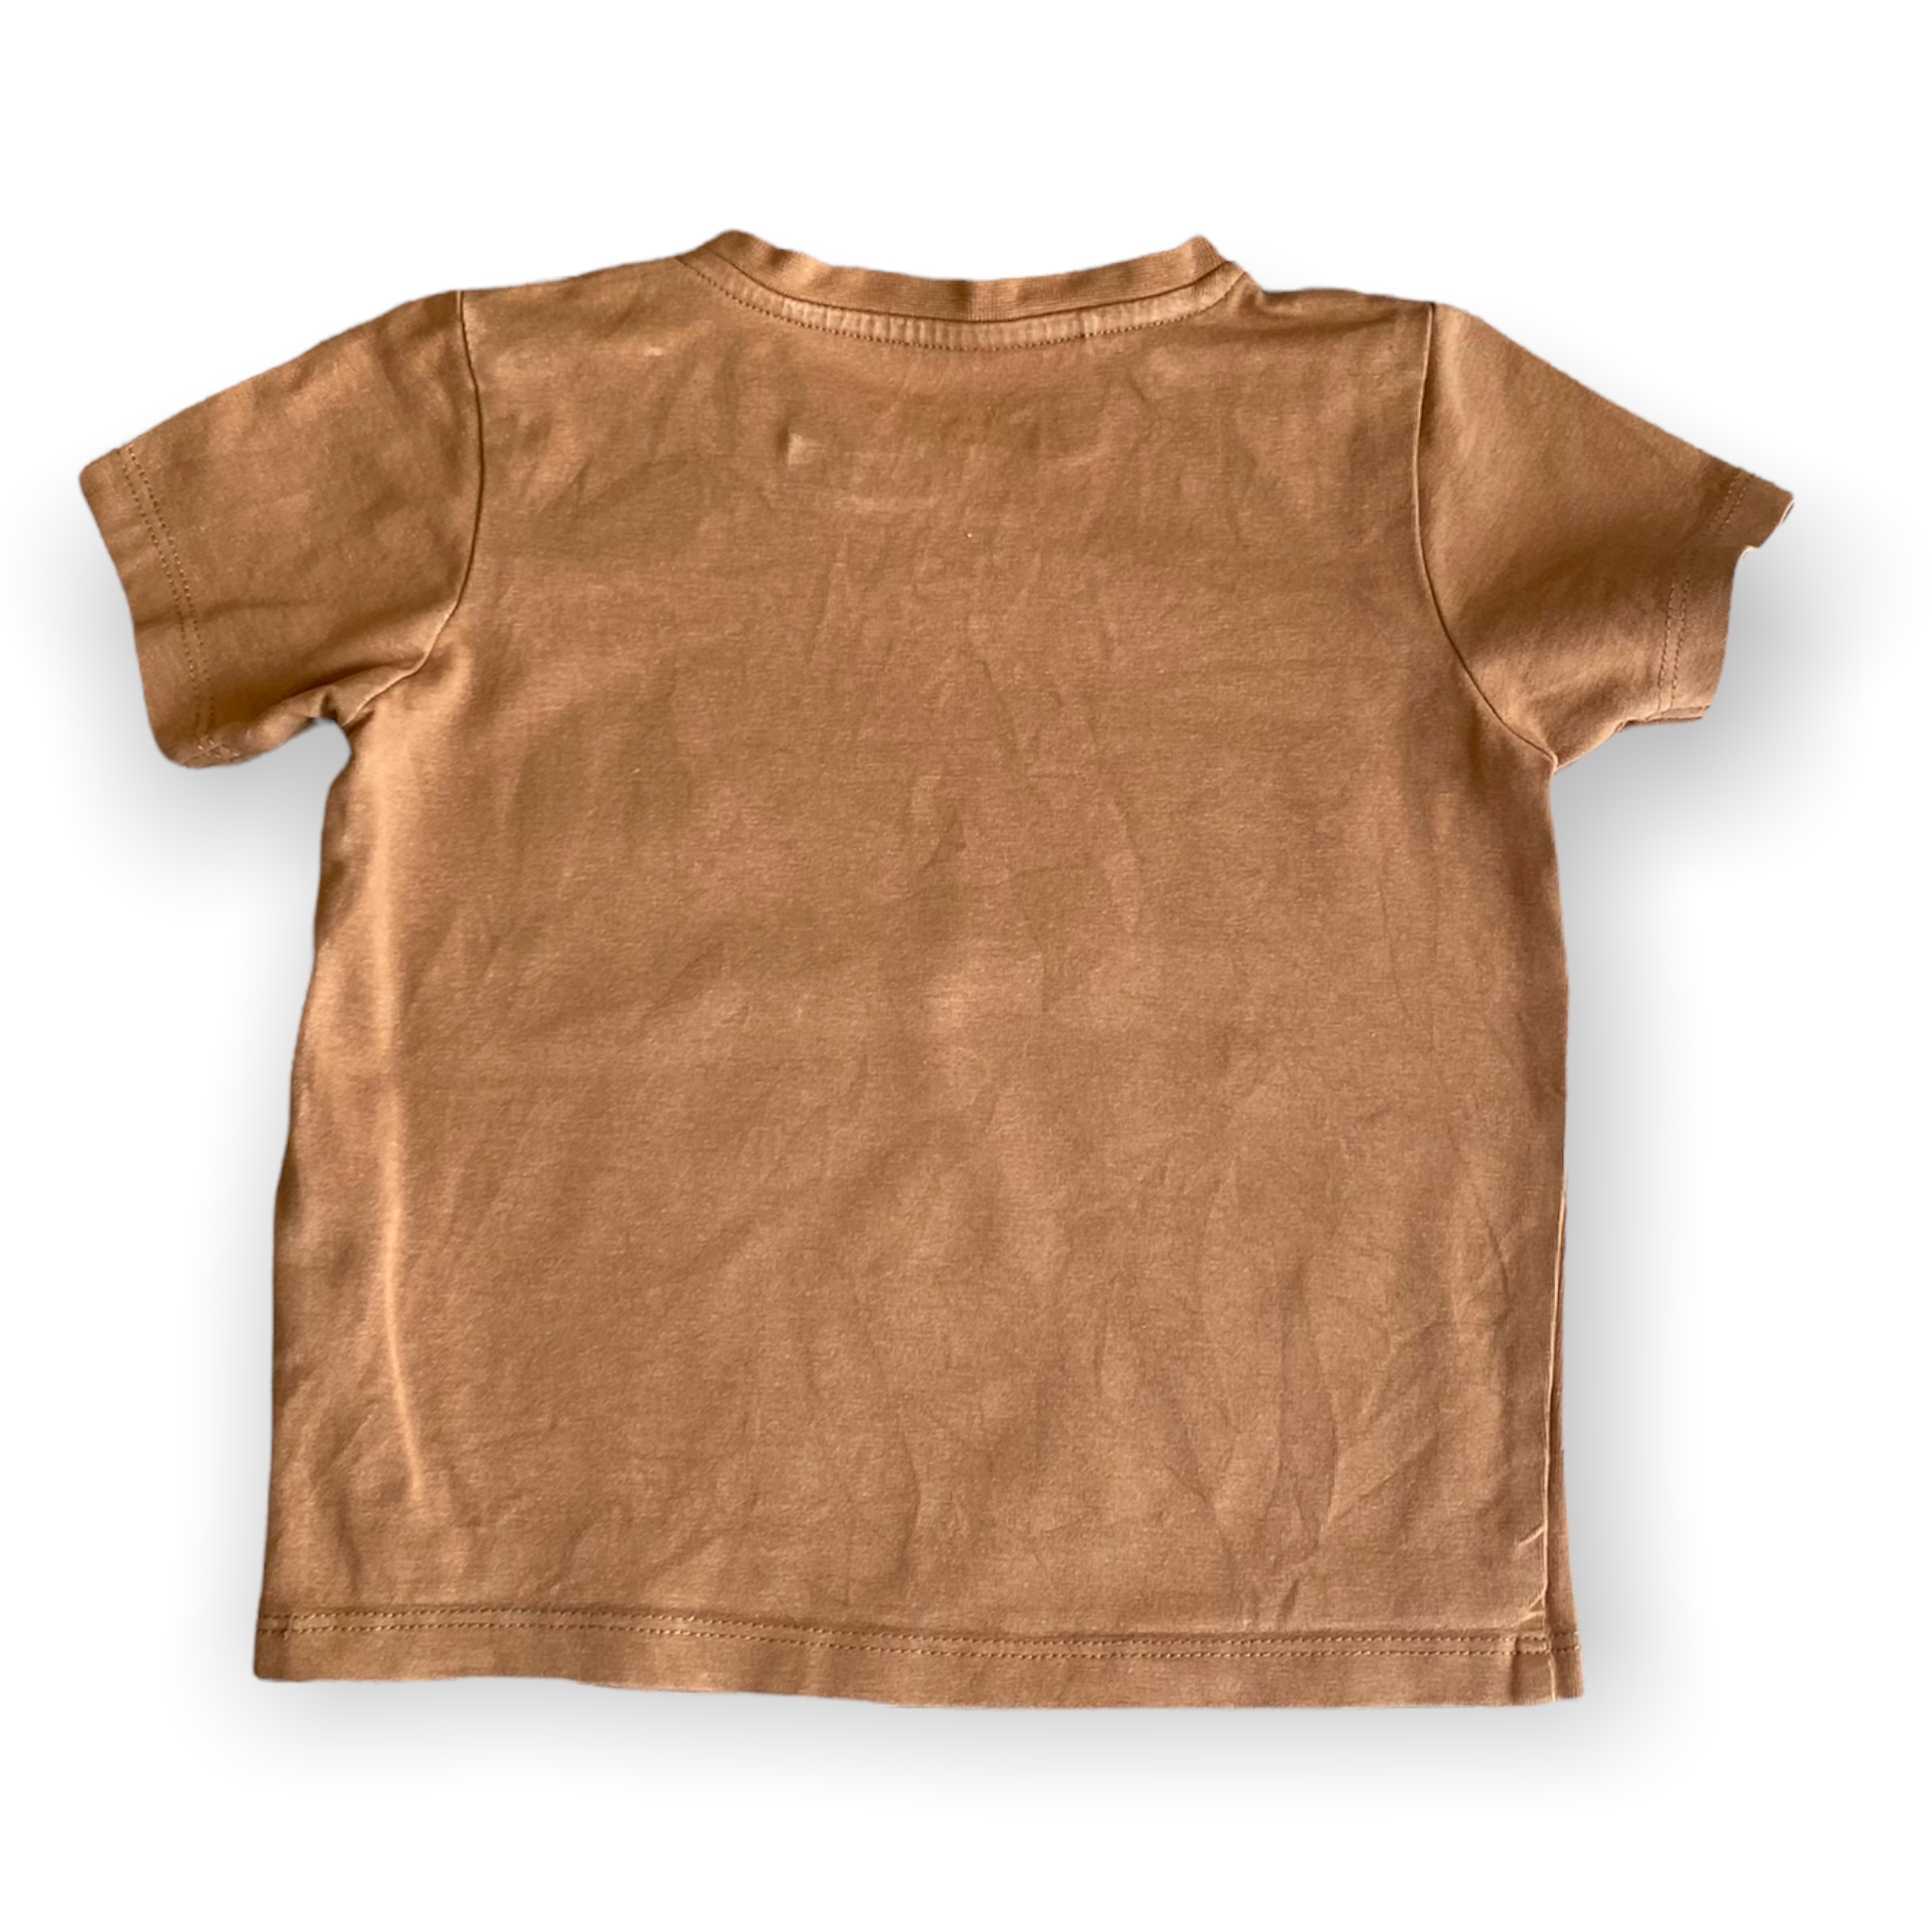 Enfärgad t-shirt, Minimarket, stl 74